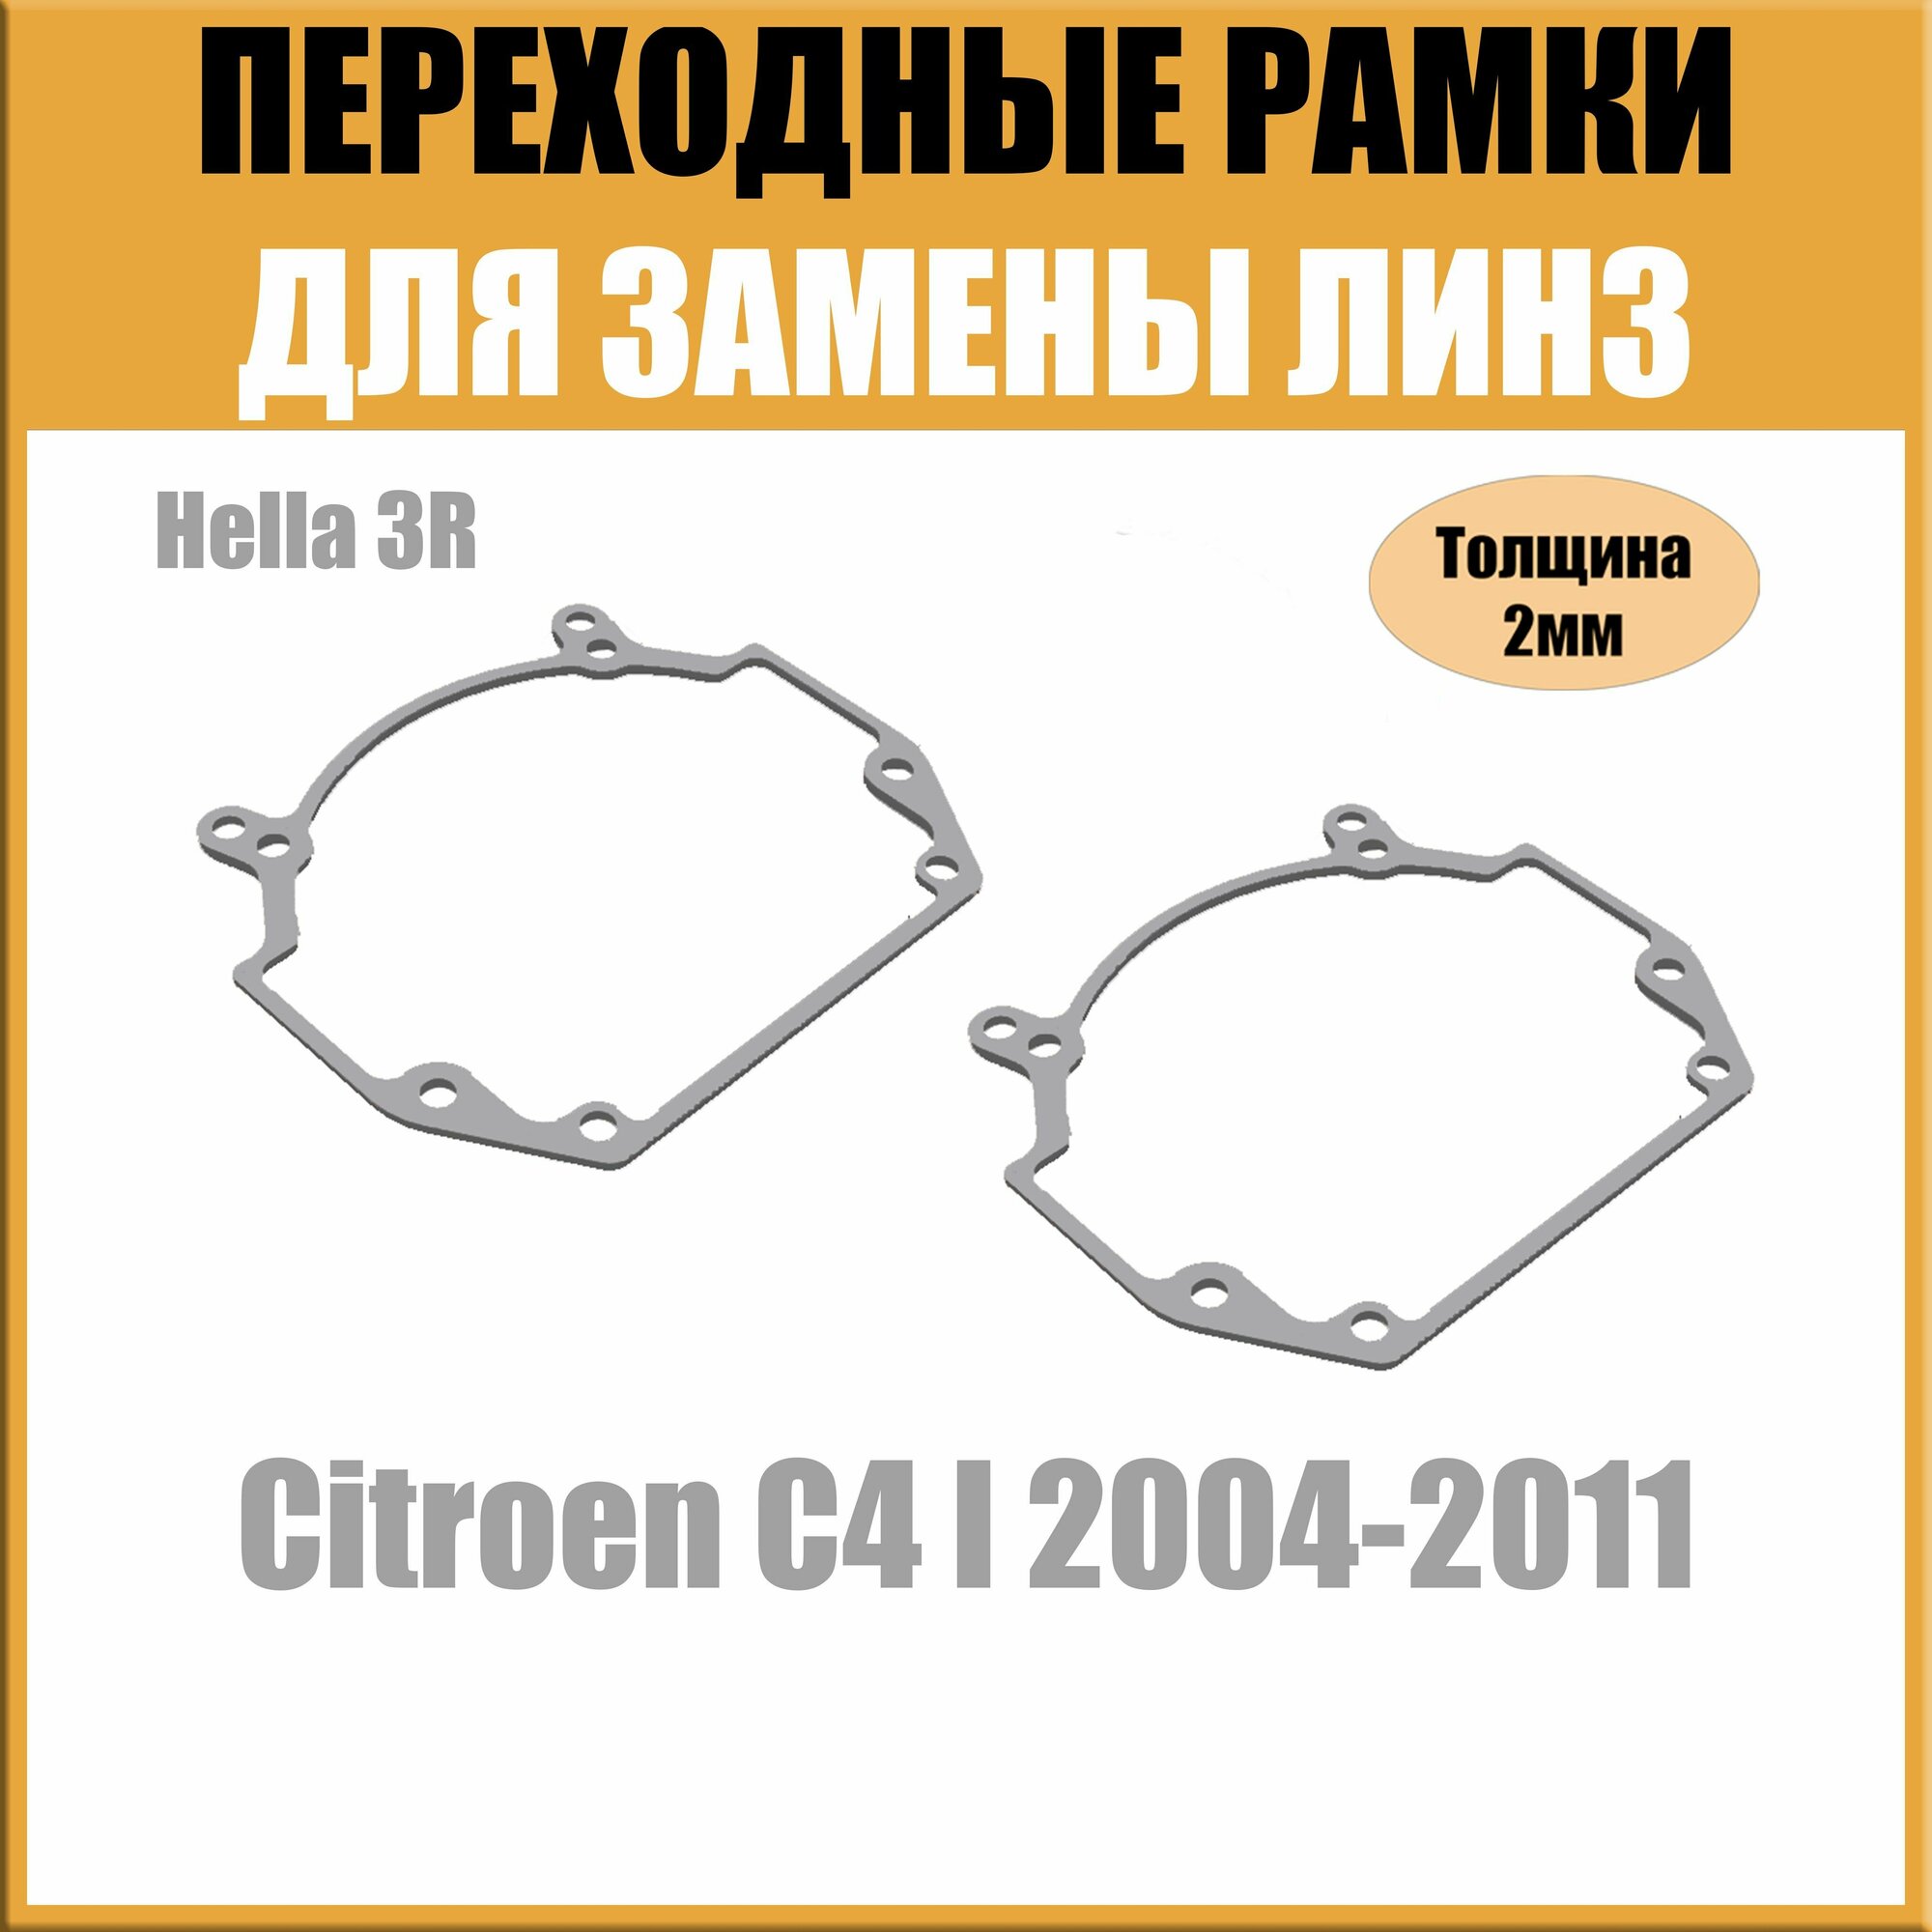 Переходные рамки для линз на Citroen C4 I 2004-2011 под модуль Hella 3R/Hella 5 (Комплект 2шт)